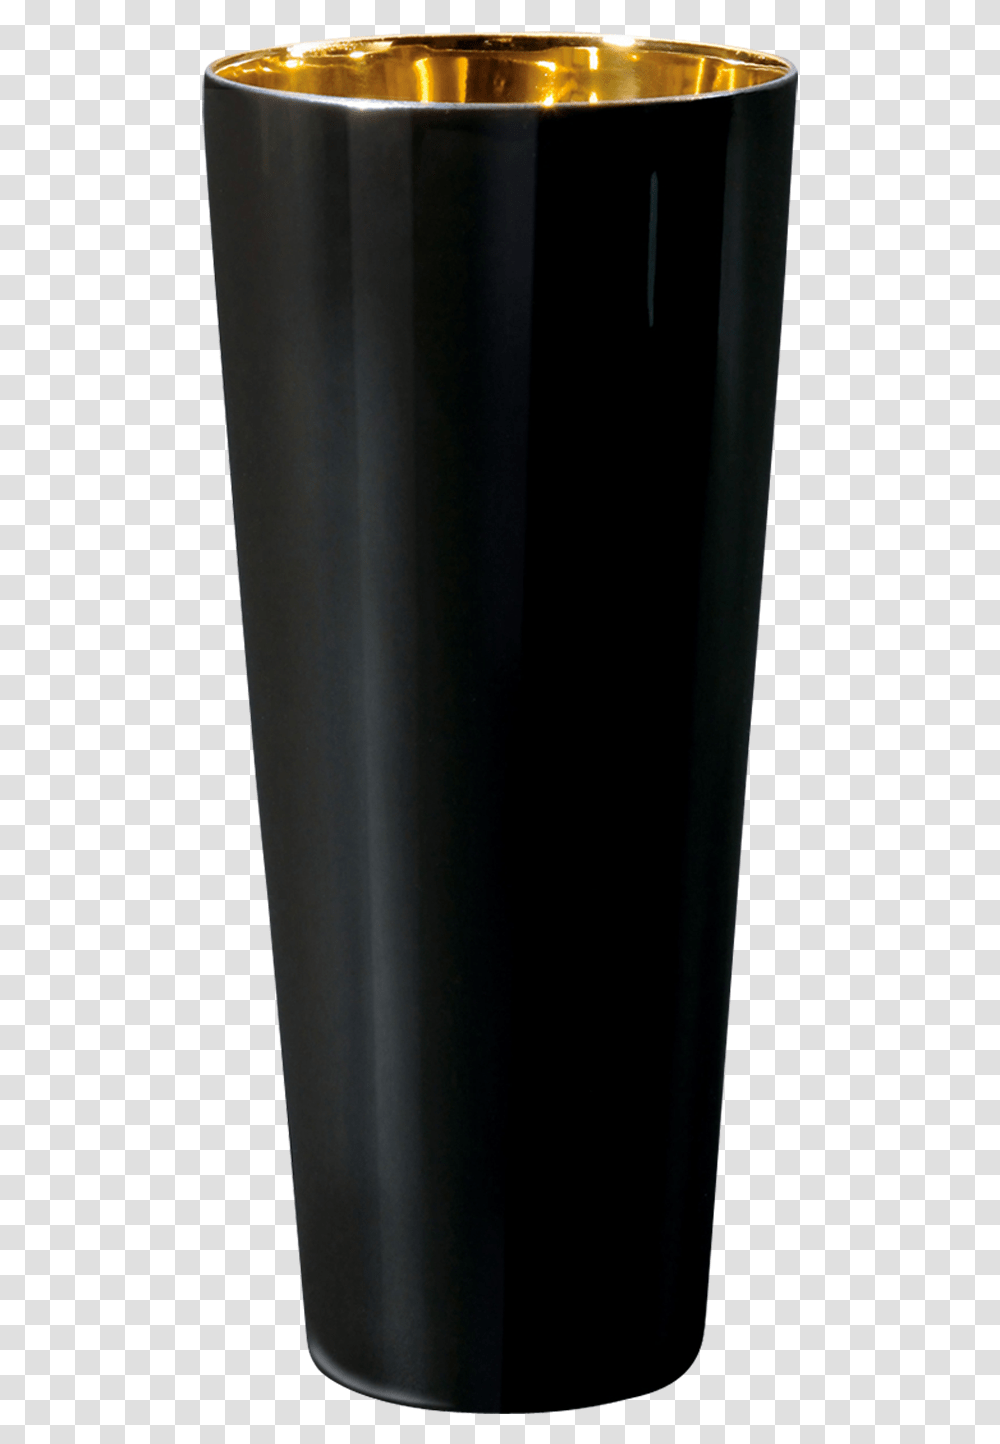 Goblet Black Smooth Cylinder, Bottle, Stout, Beer, Alcohol Transparent Png